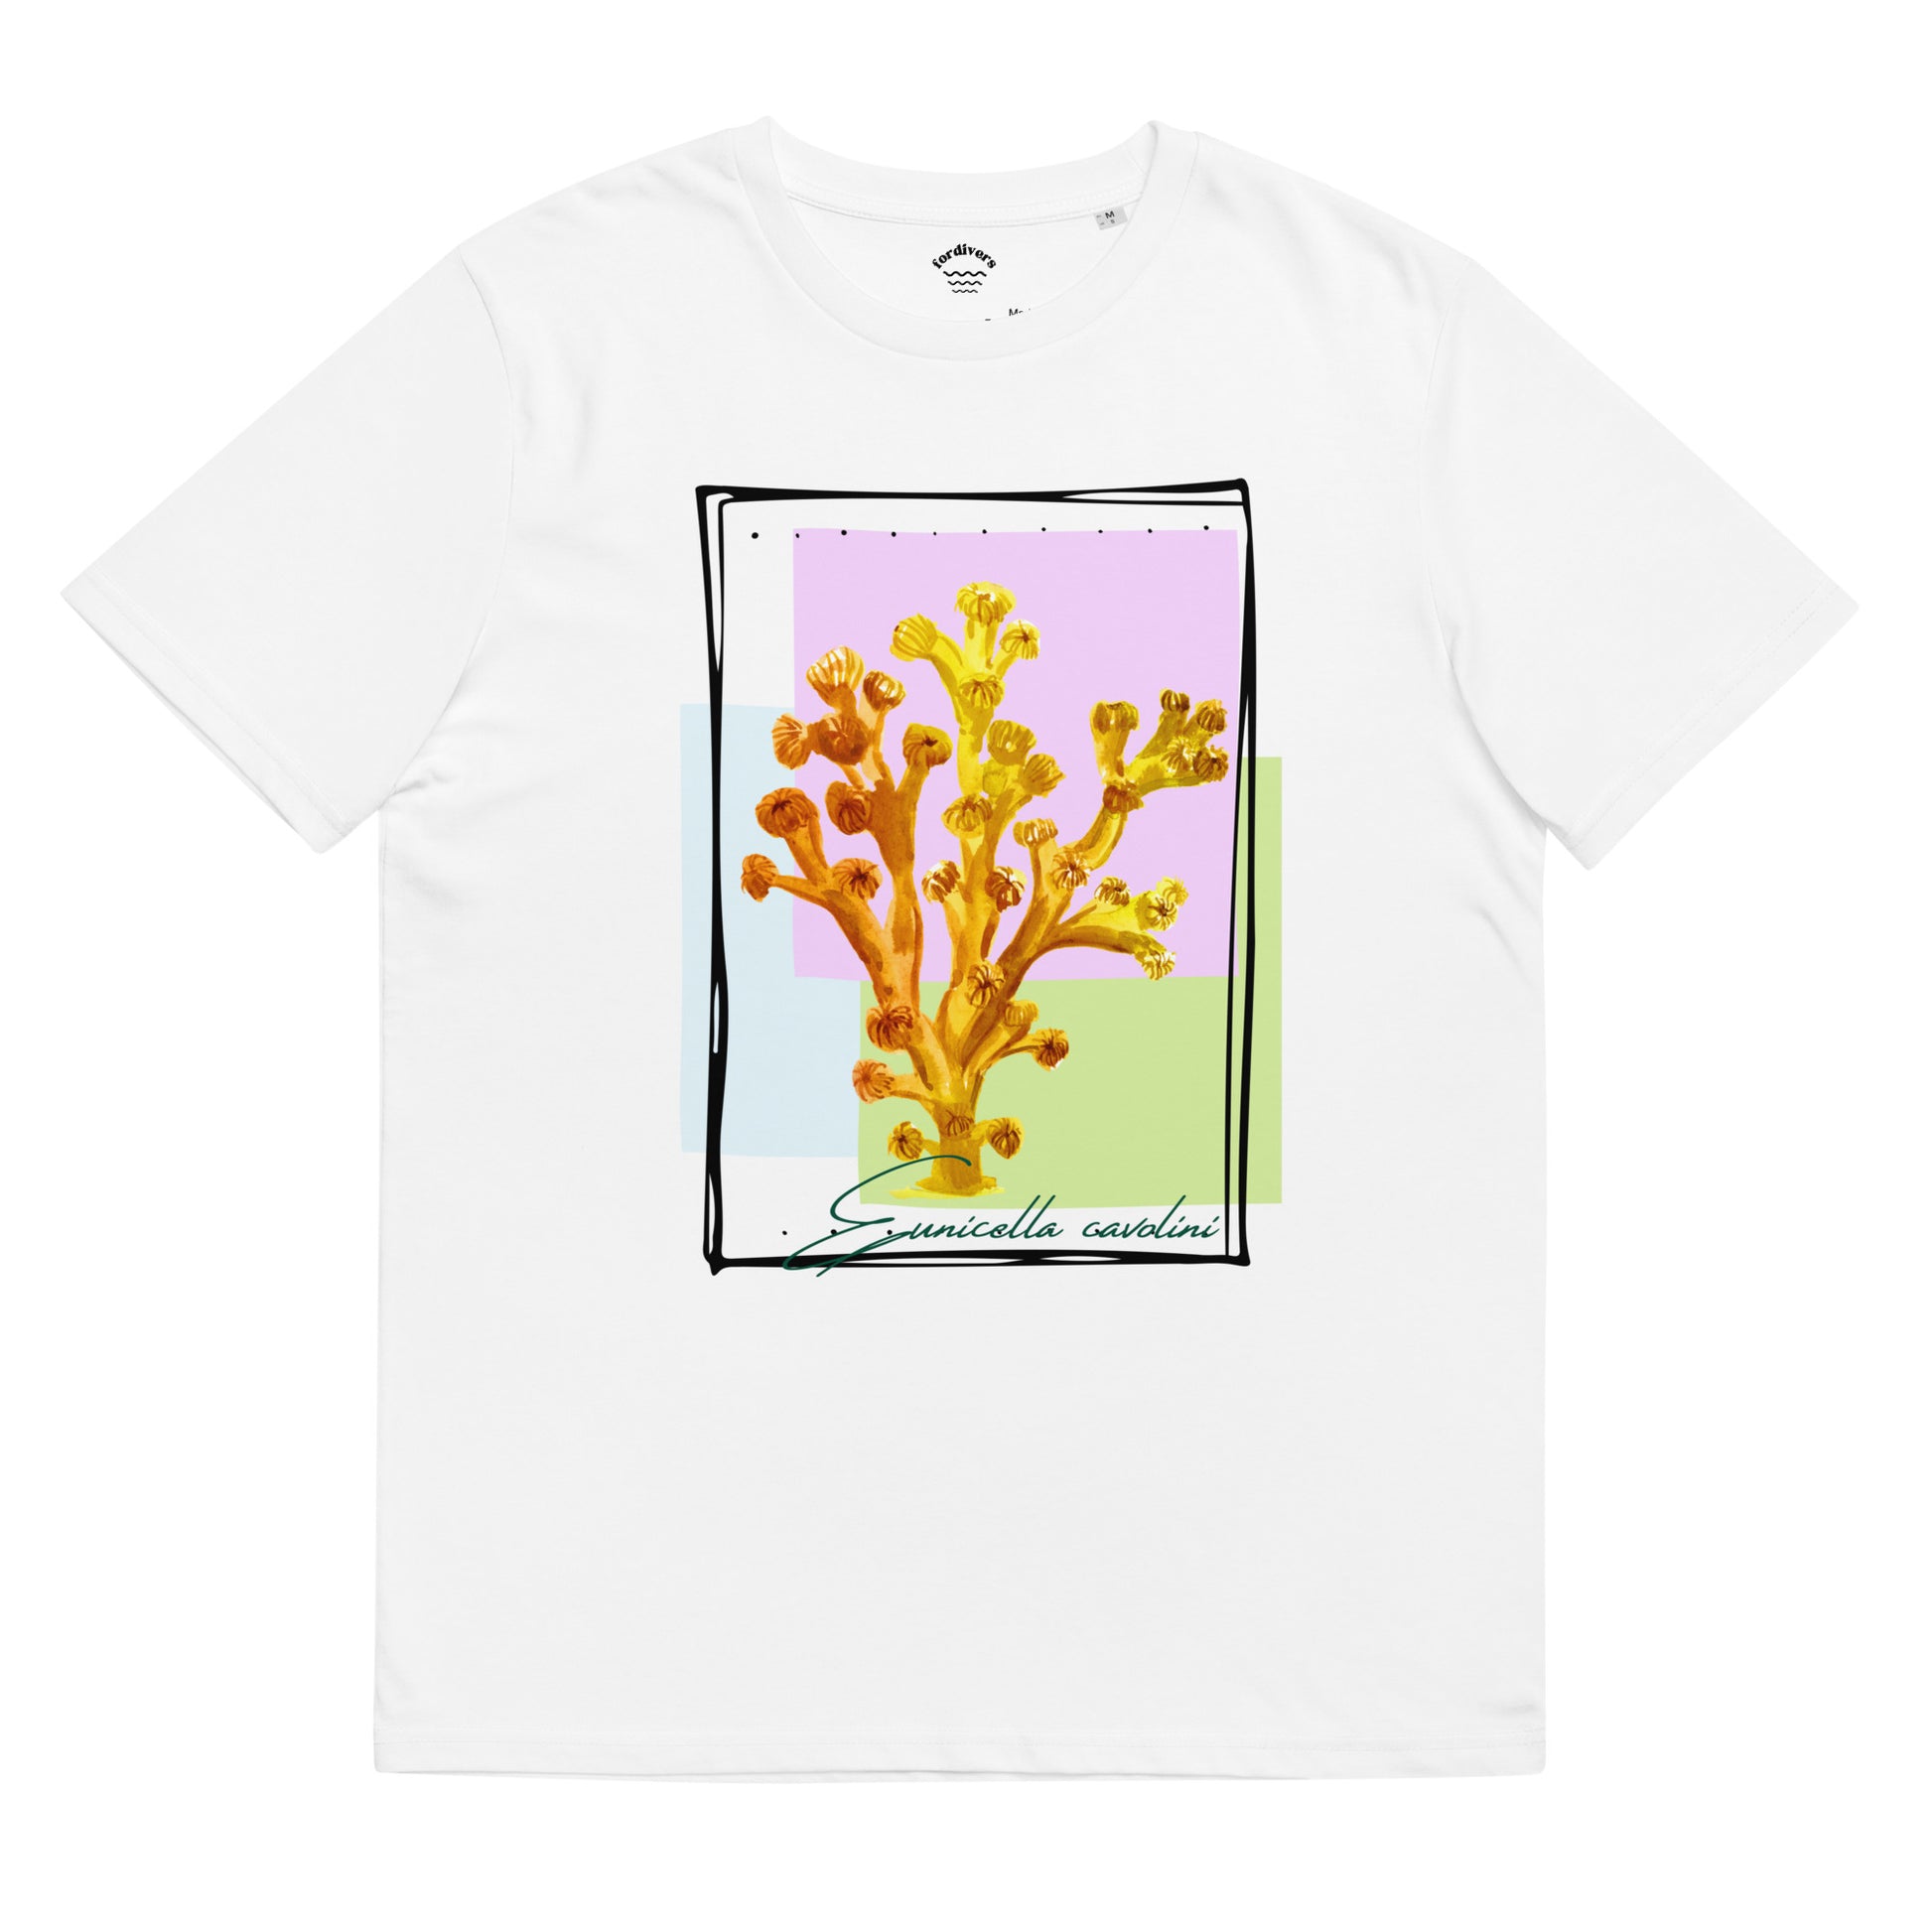 Camiseta blanca corales